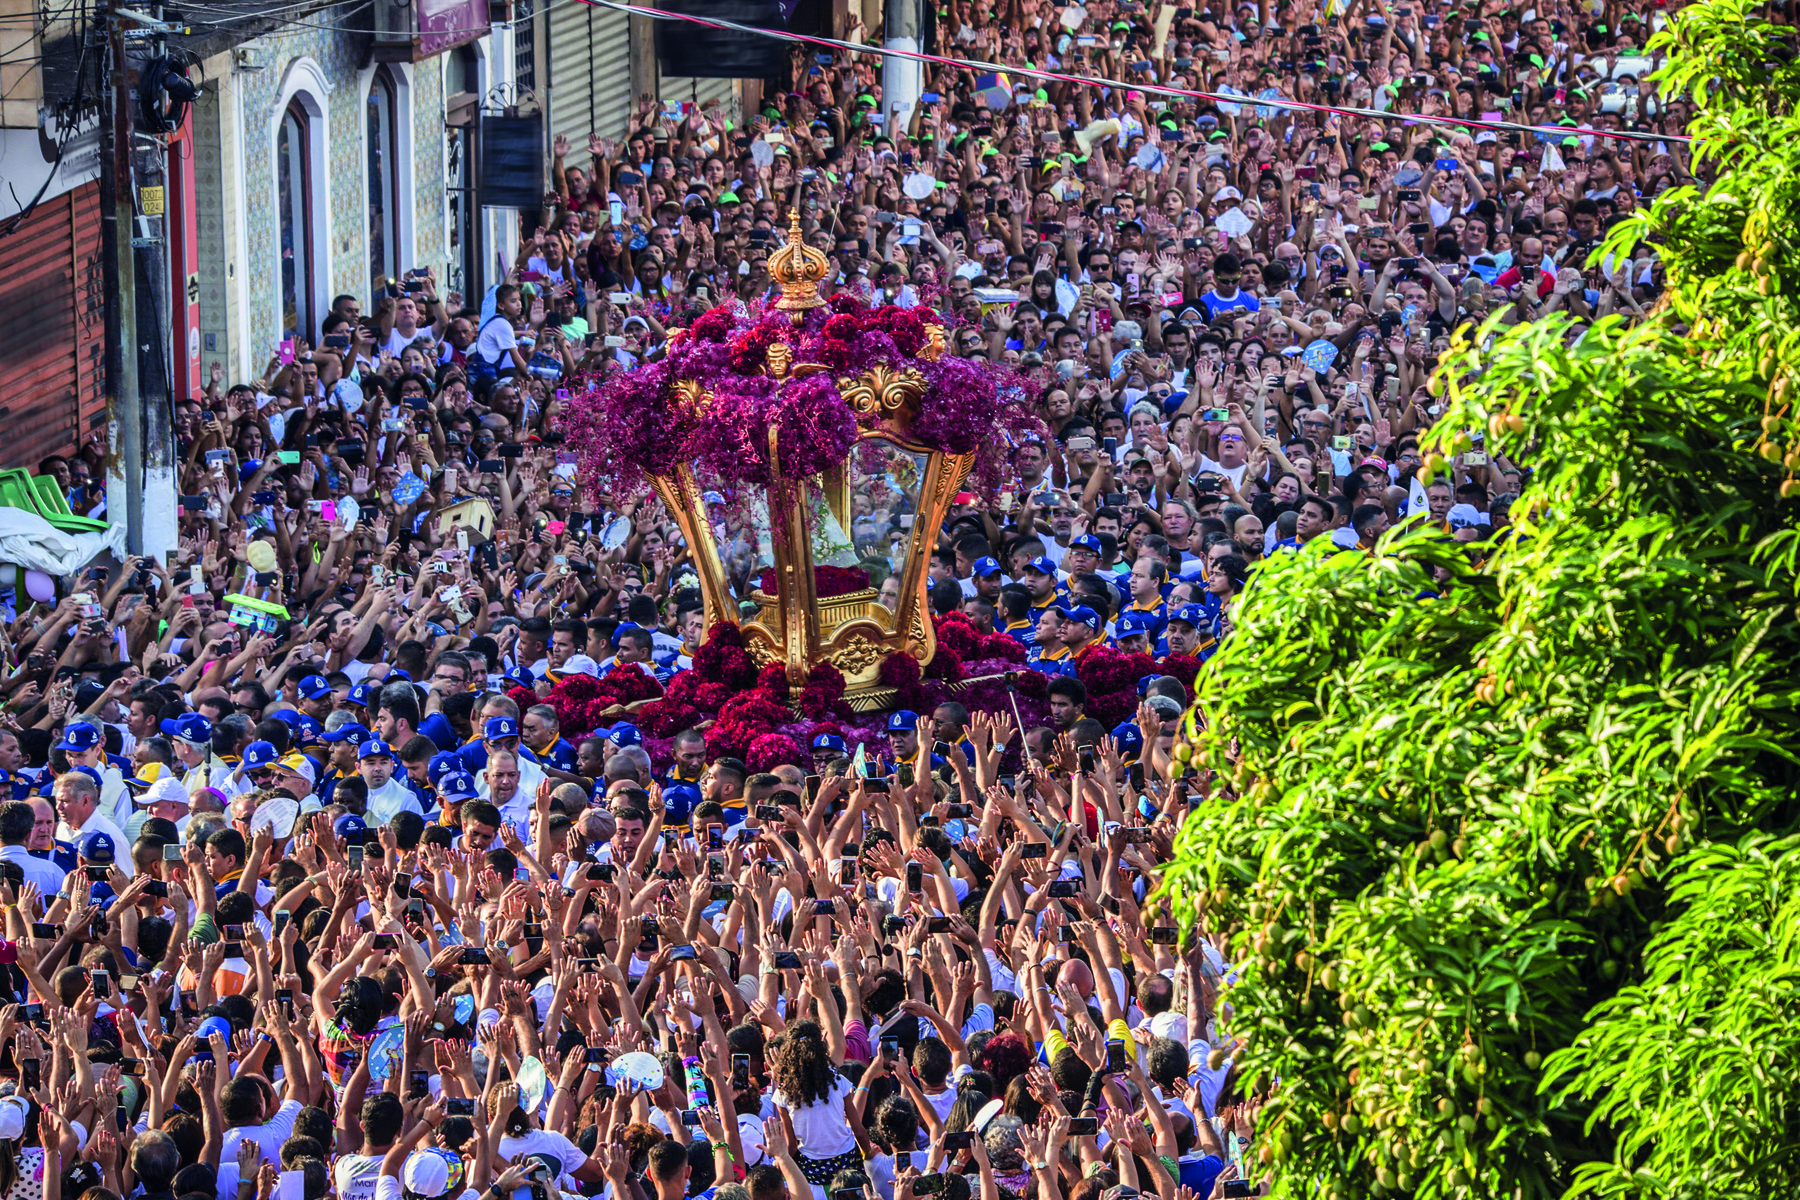 Fotografia. Vista de multidão caminhando em uma rua em procissão. No meio da multidão, um andor dourado e vermelho com a escultura de uma santa dentro é carregado pela multidão.